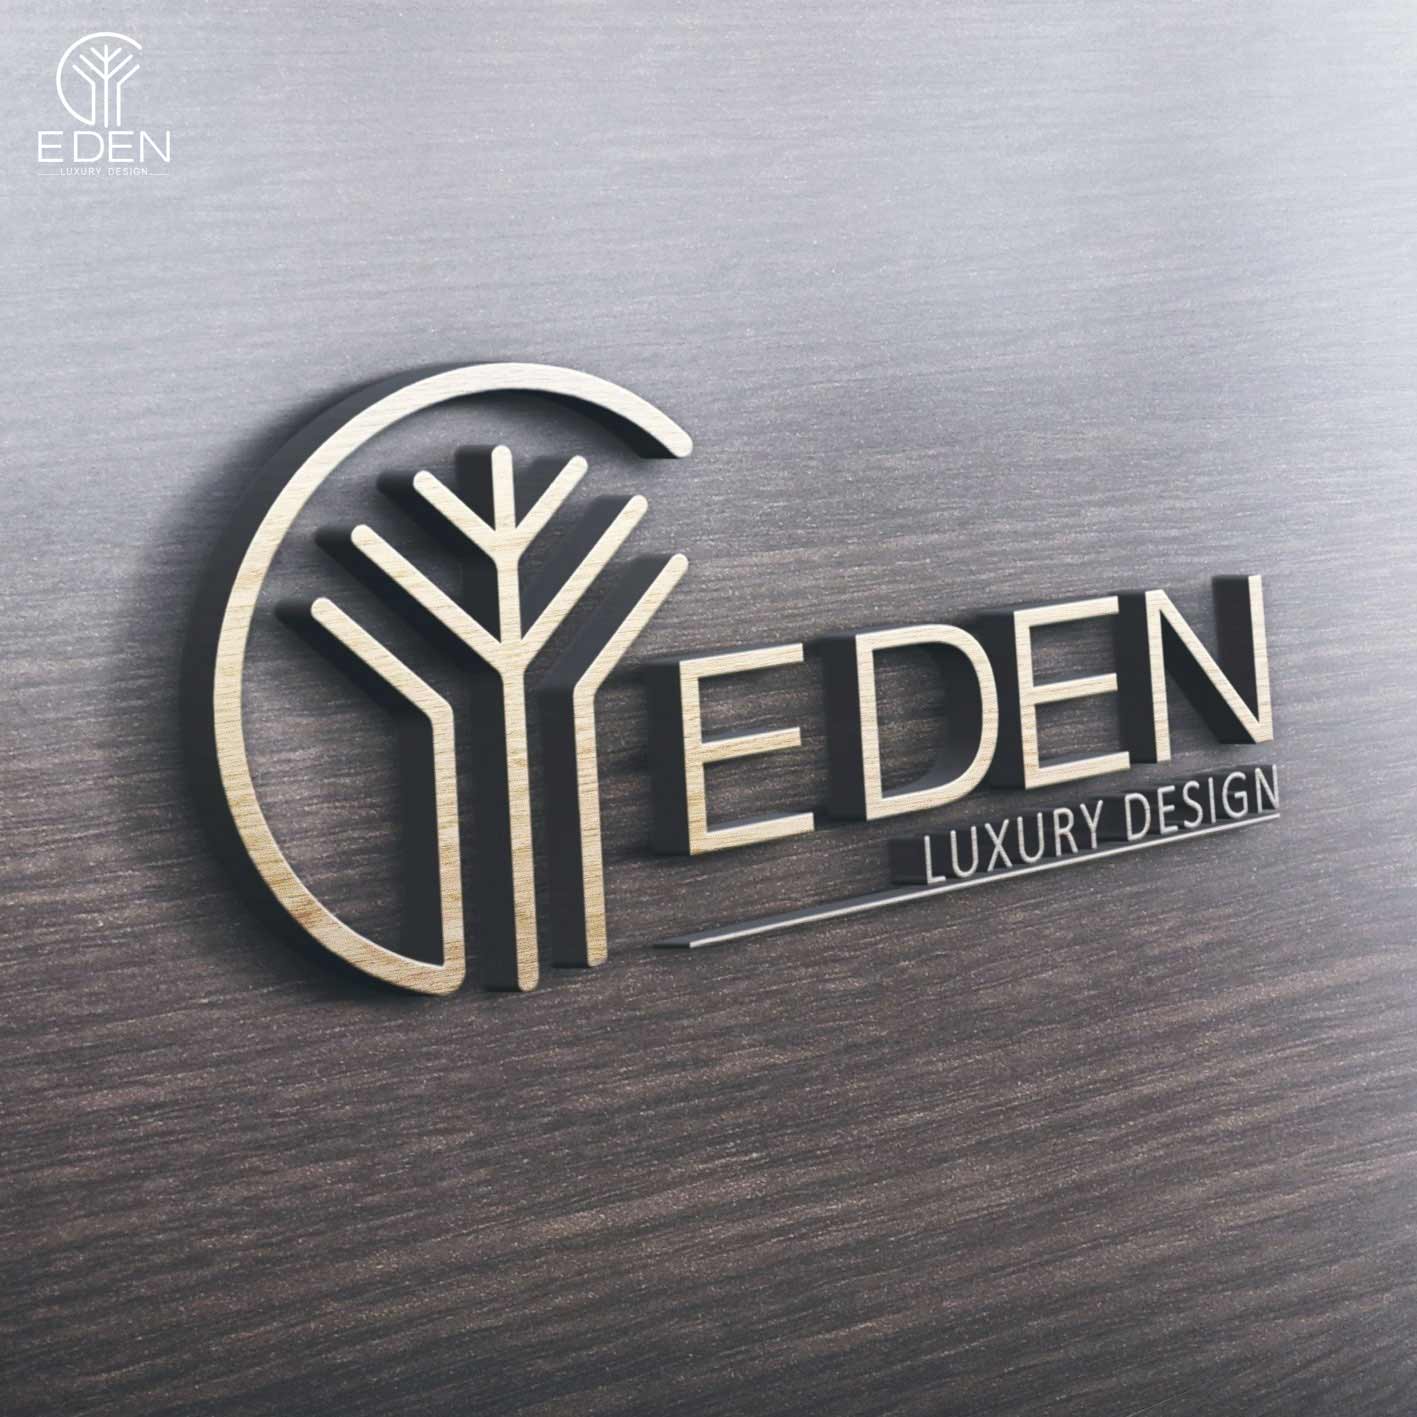 Eden Luxury chuyên cung cấp những dịch vụ tốt nhất cho khách hàng